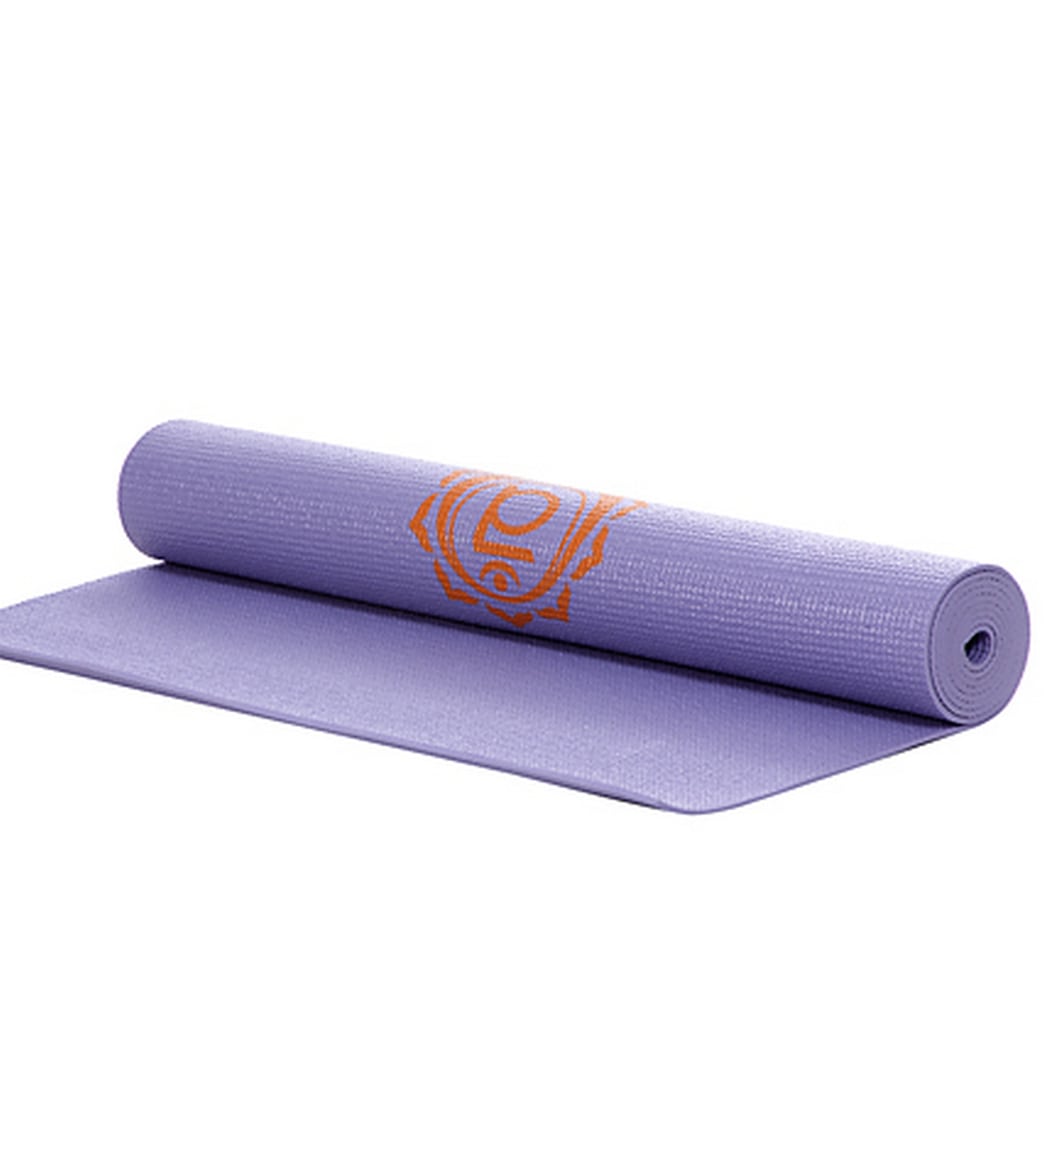 Chakra Yoga Mat to Match Your Workout Vibe